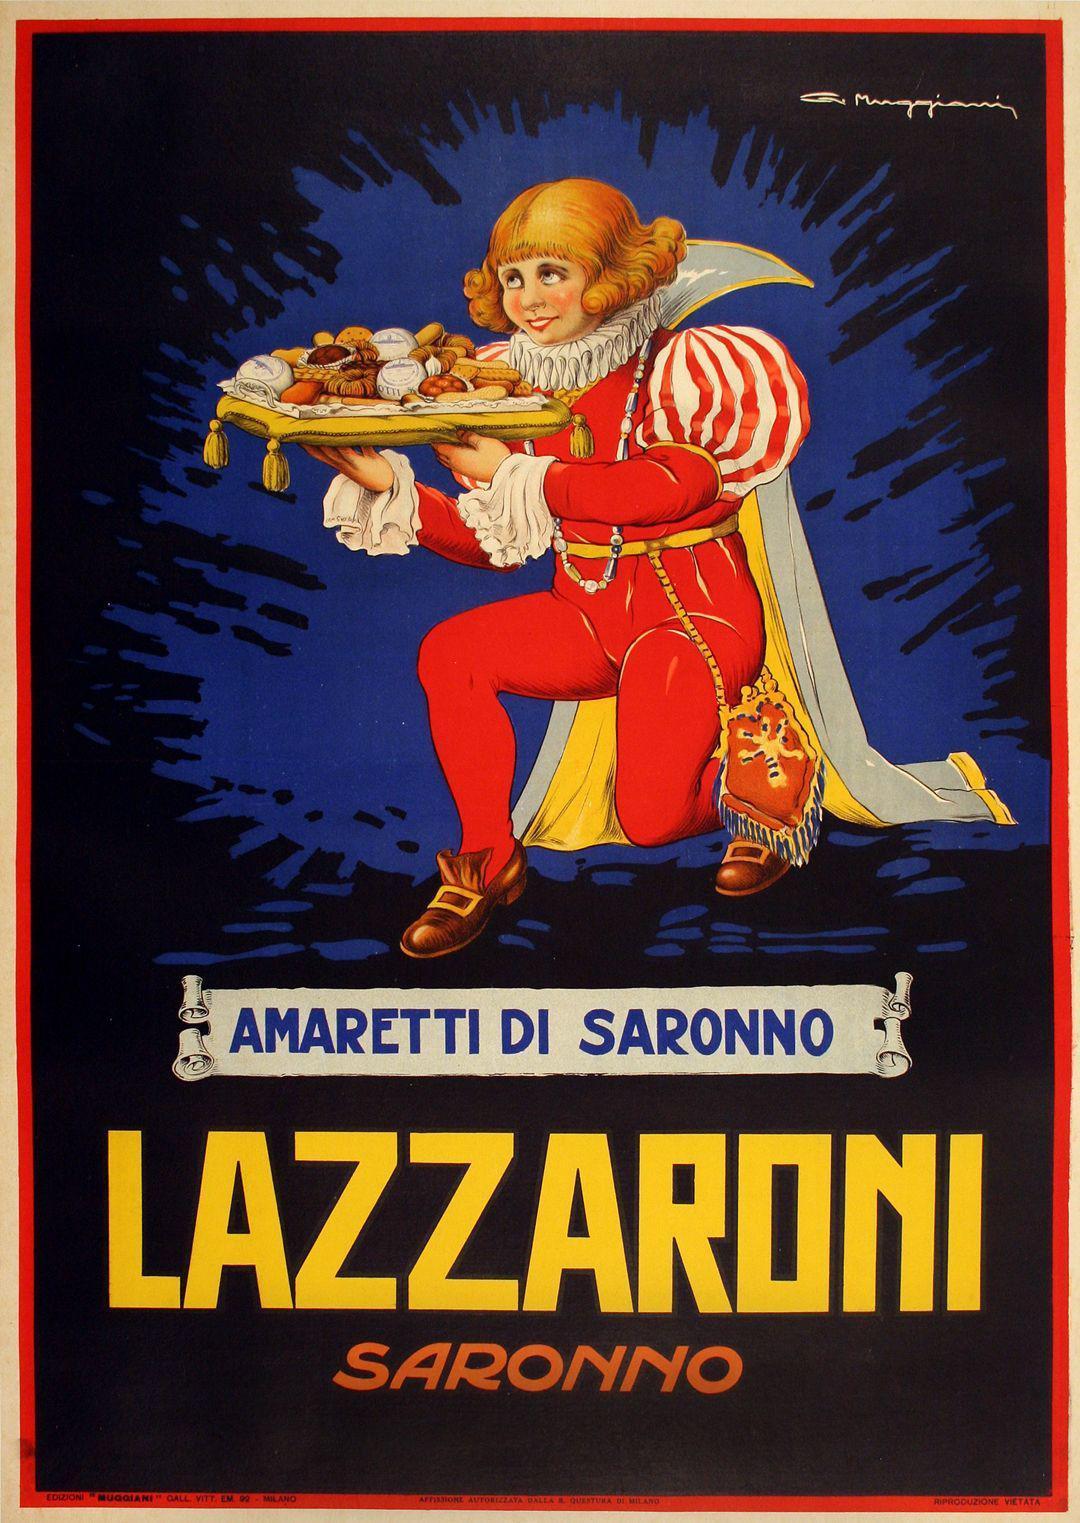 Lazzaroni - Amaretti di Saronno Poster by Giorgio Muggiani Original Vintage Italian c1930